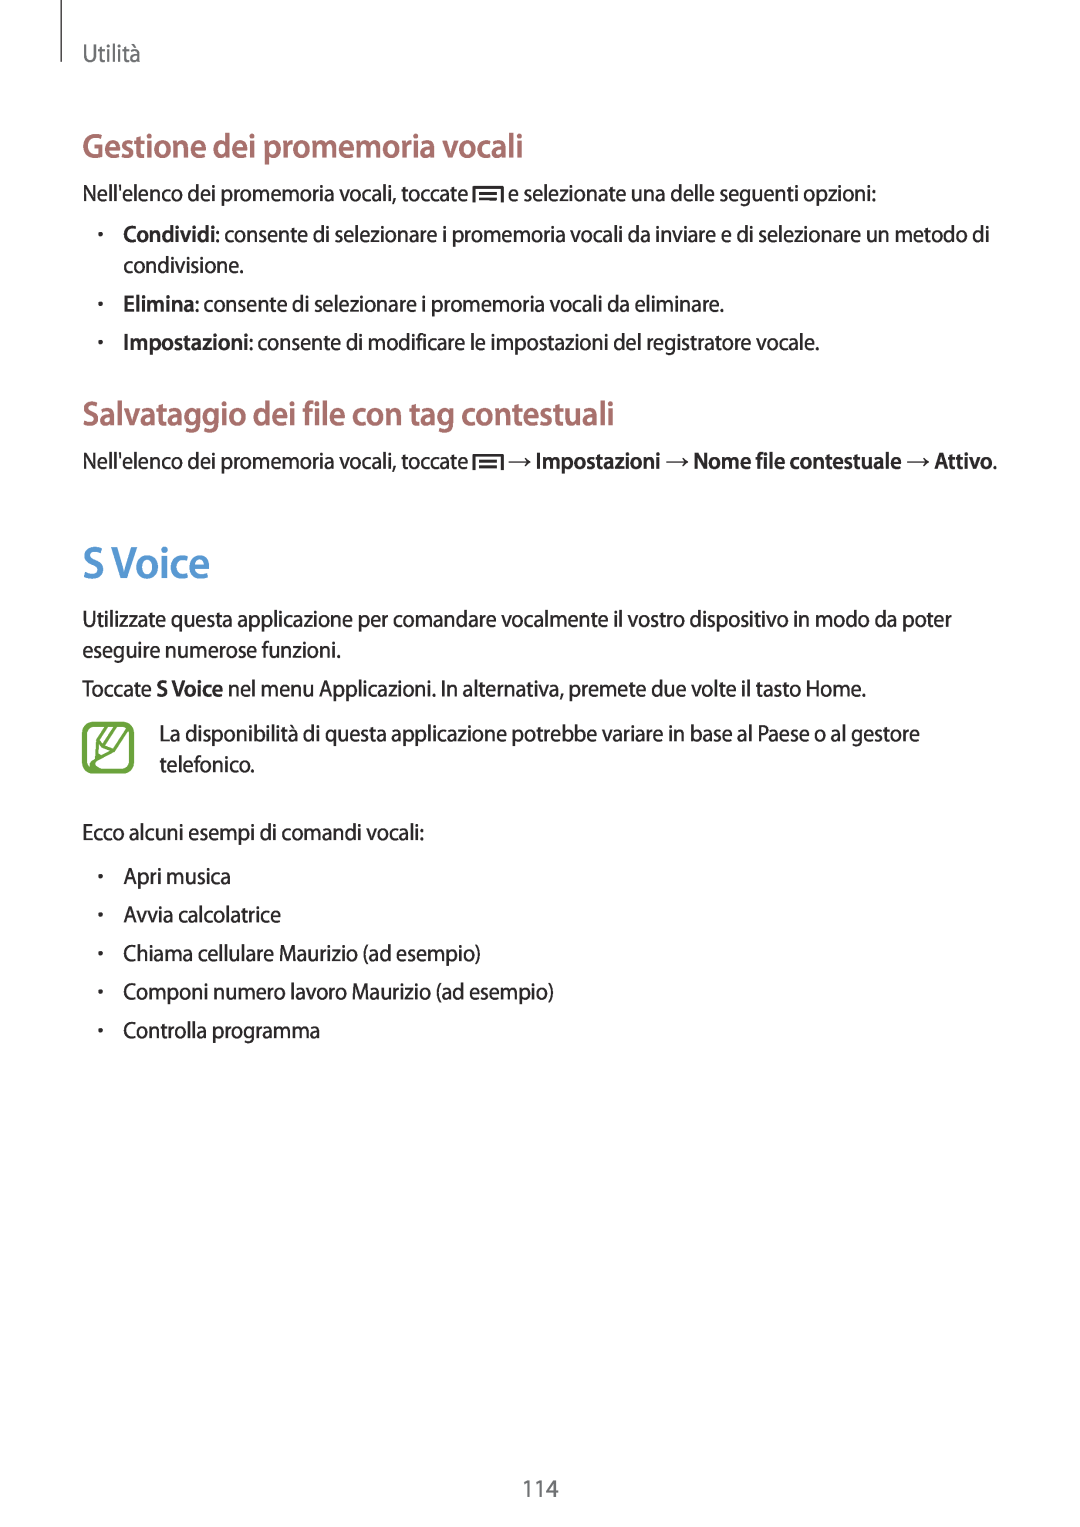 Samsung GT-I9515ZWAHUI manual S Voice, Gestione dei promemoria vocali, Salvataggio dei file con tag contestuali, Utilità 